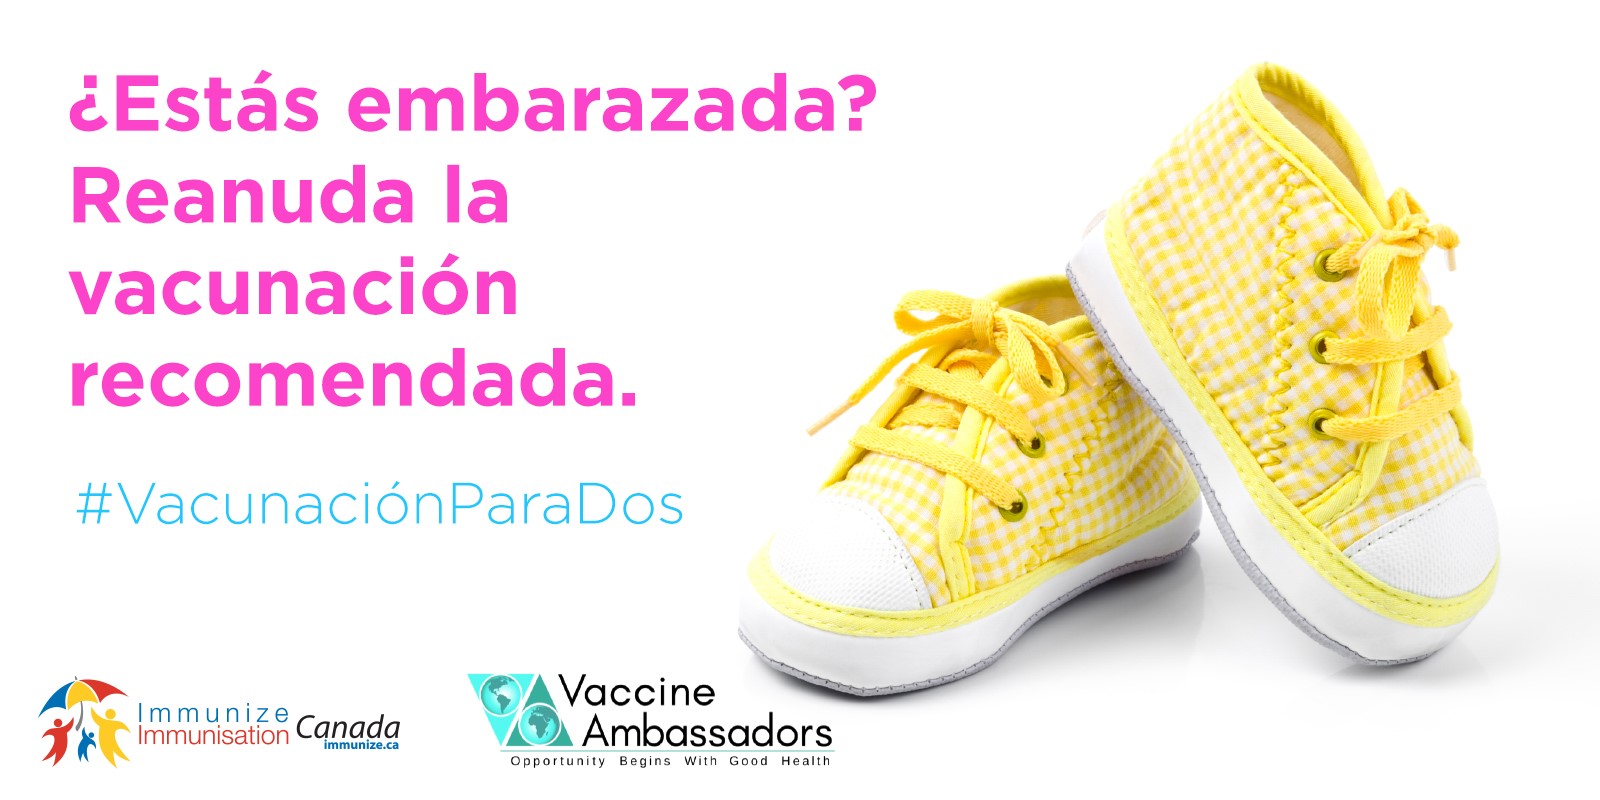 Vous attendez un bébé? Remettez-vous sur la bonne voie avec les vaccinations recommandées. | espagnol